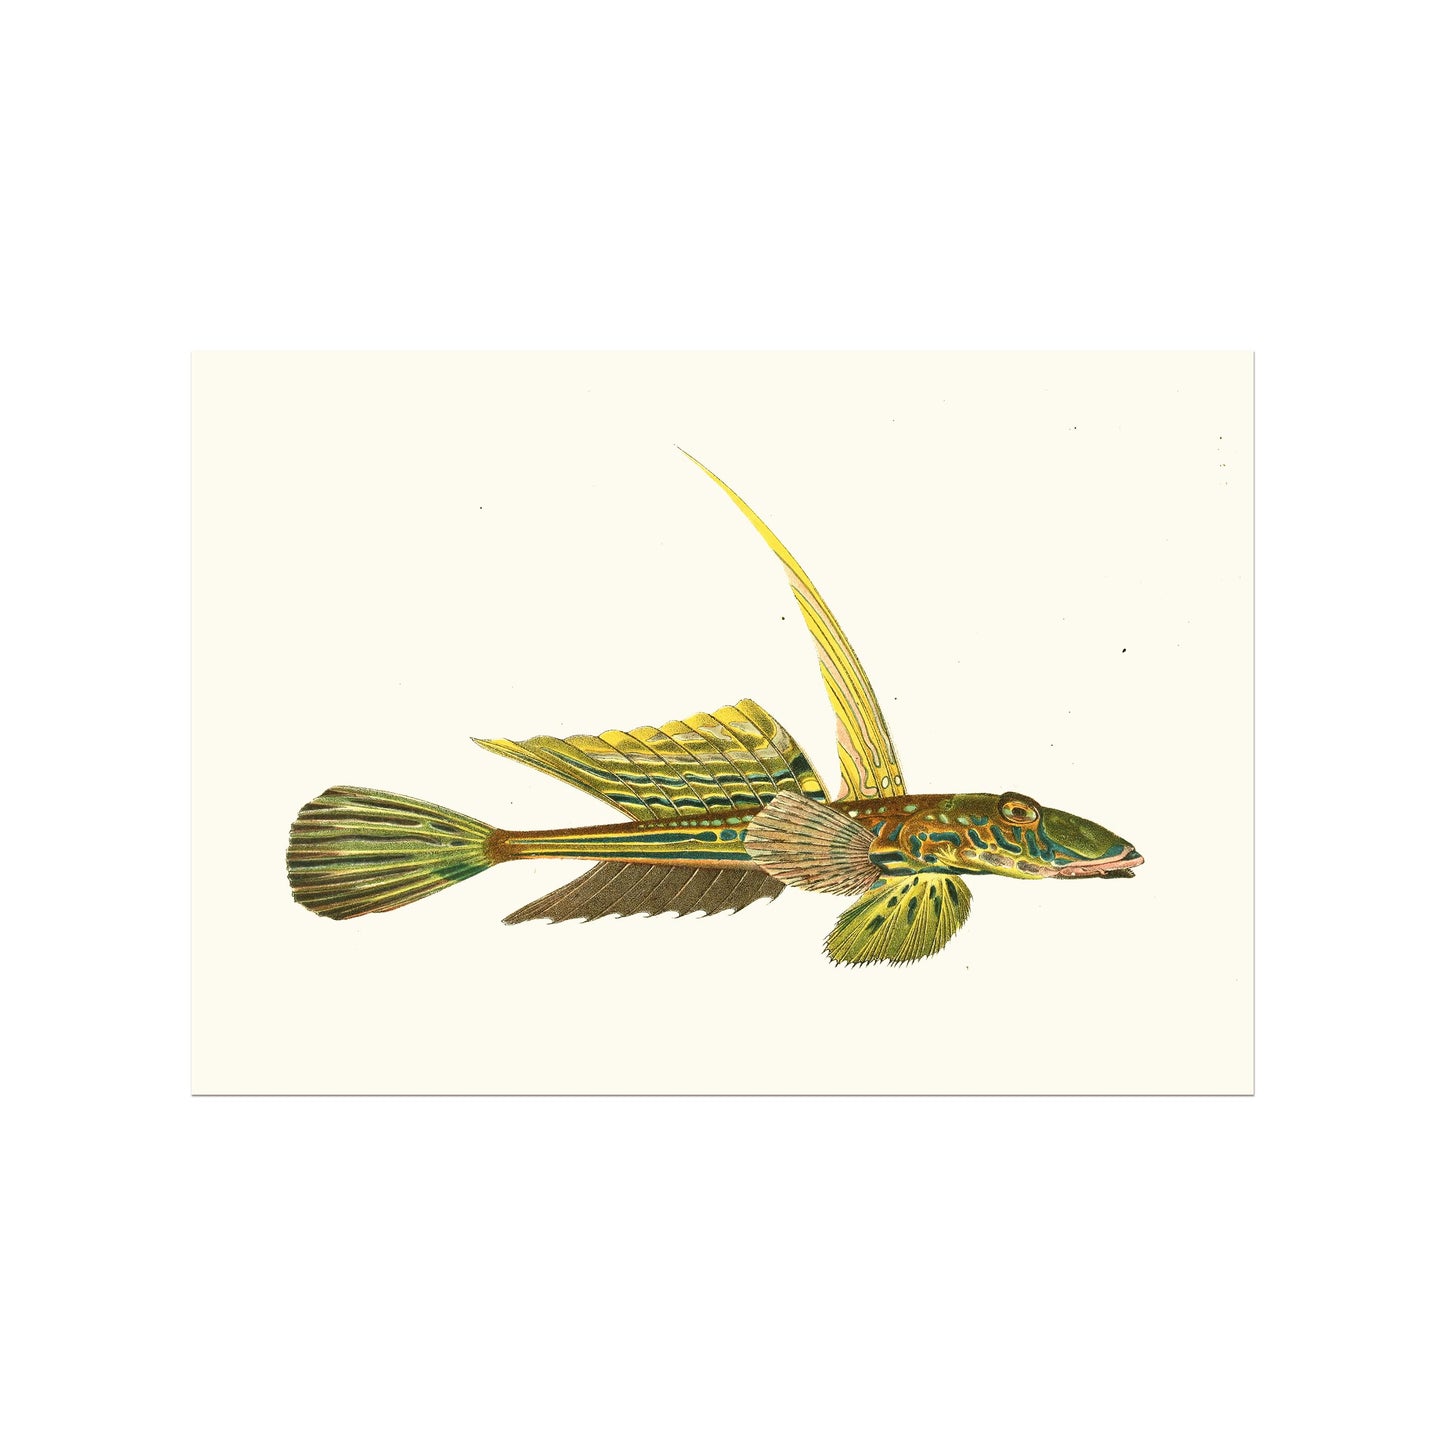 Callionymus lyra - Dragonet